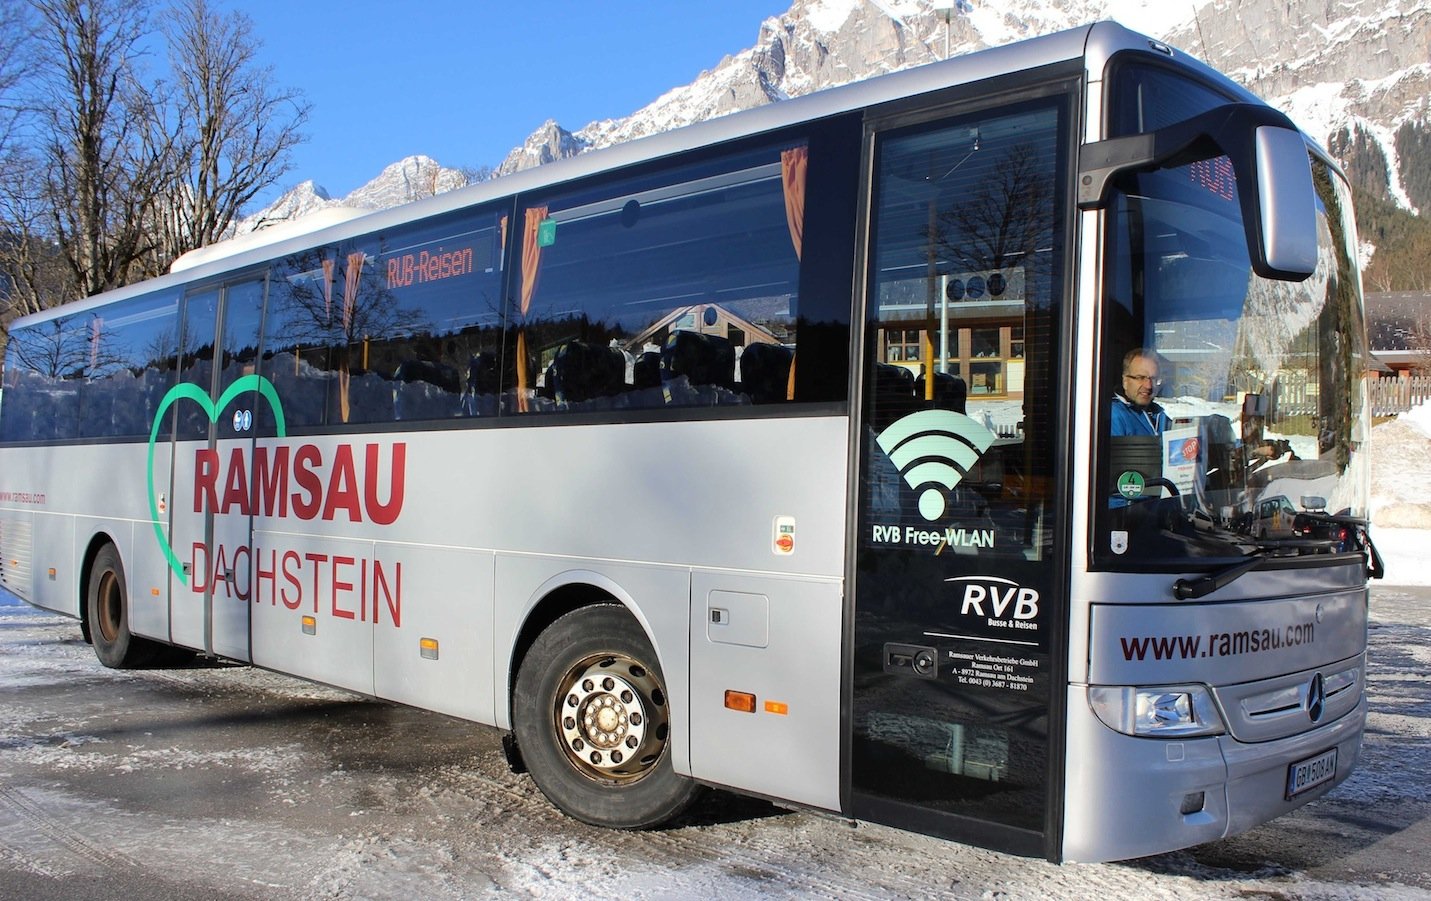 Ziele – Ramsau am Dachstein: Steirische Winter- und Tourismusregion setzt auf WLAN in Skibussen